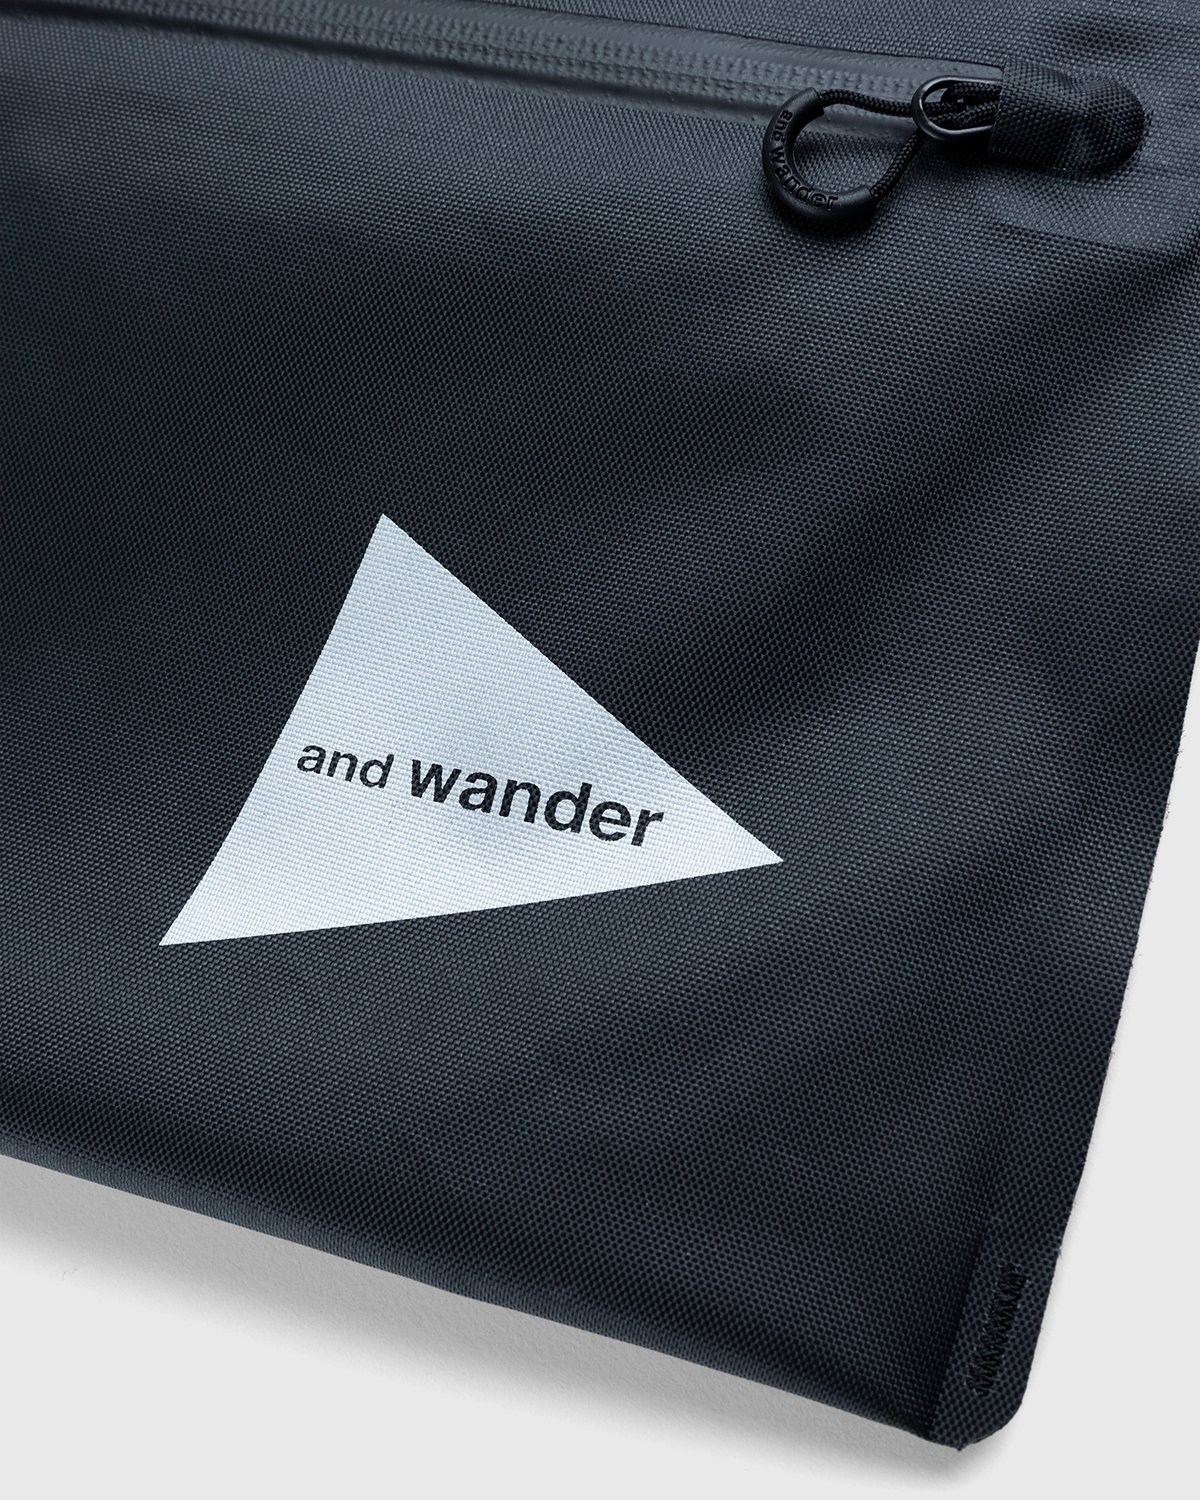 And Wander - Waterproof Satchel Black - Accessories - Black - Image 3